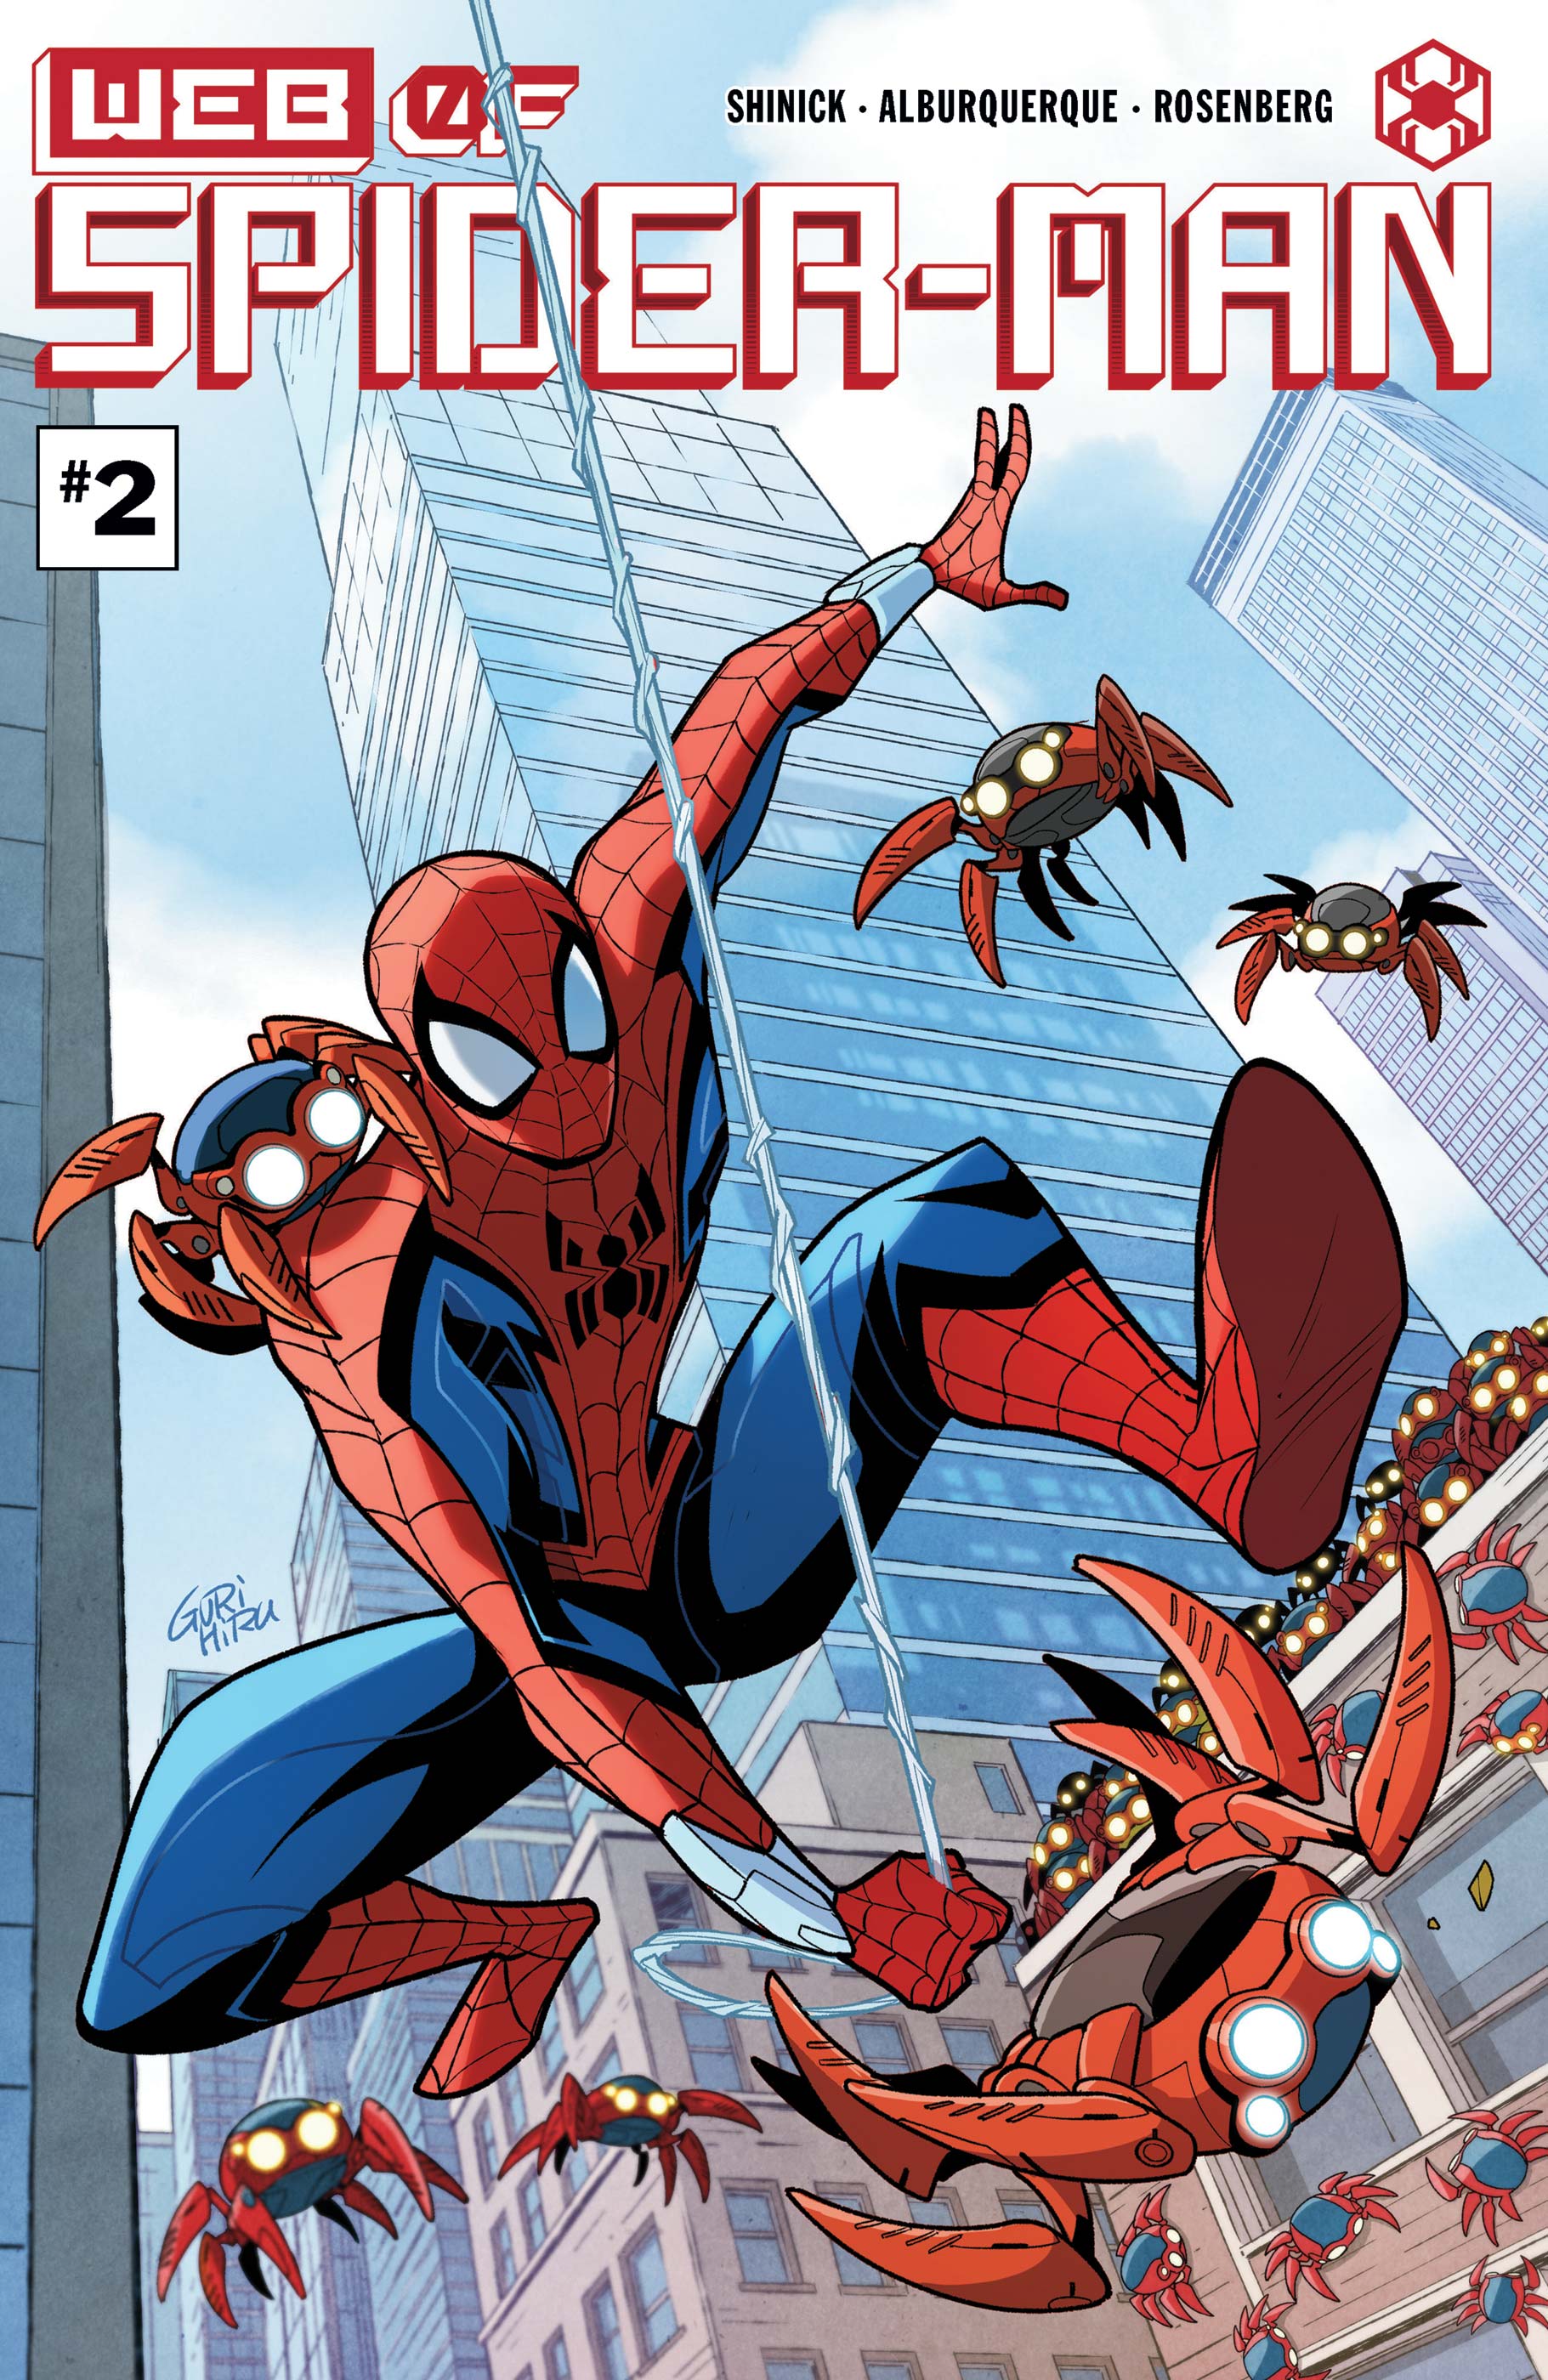 Spider's web comics